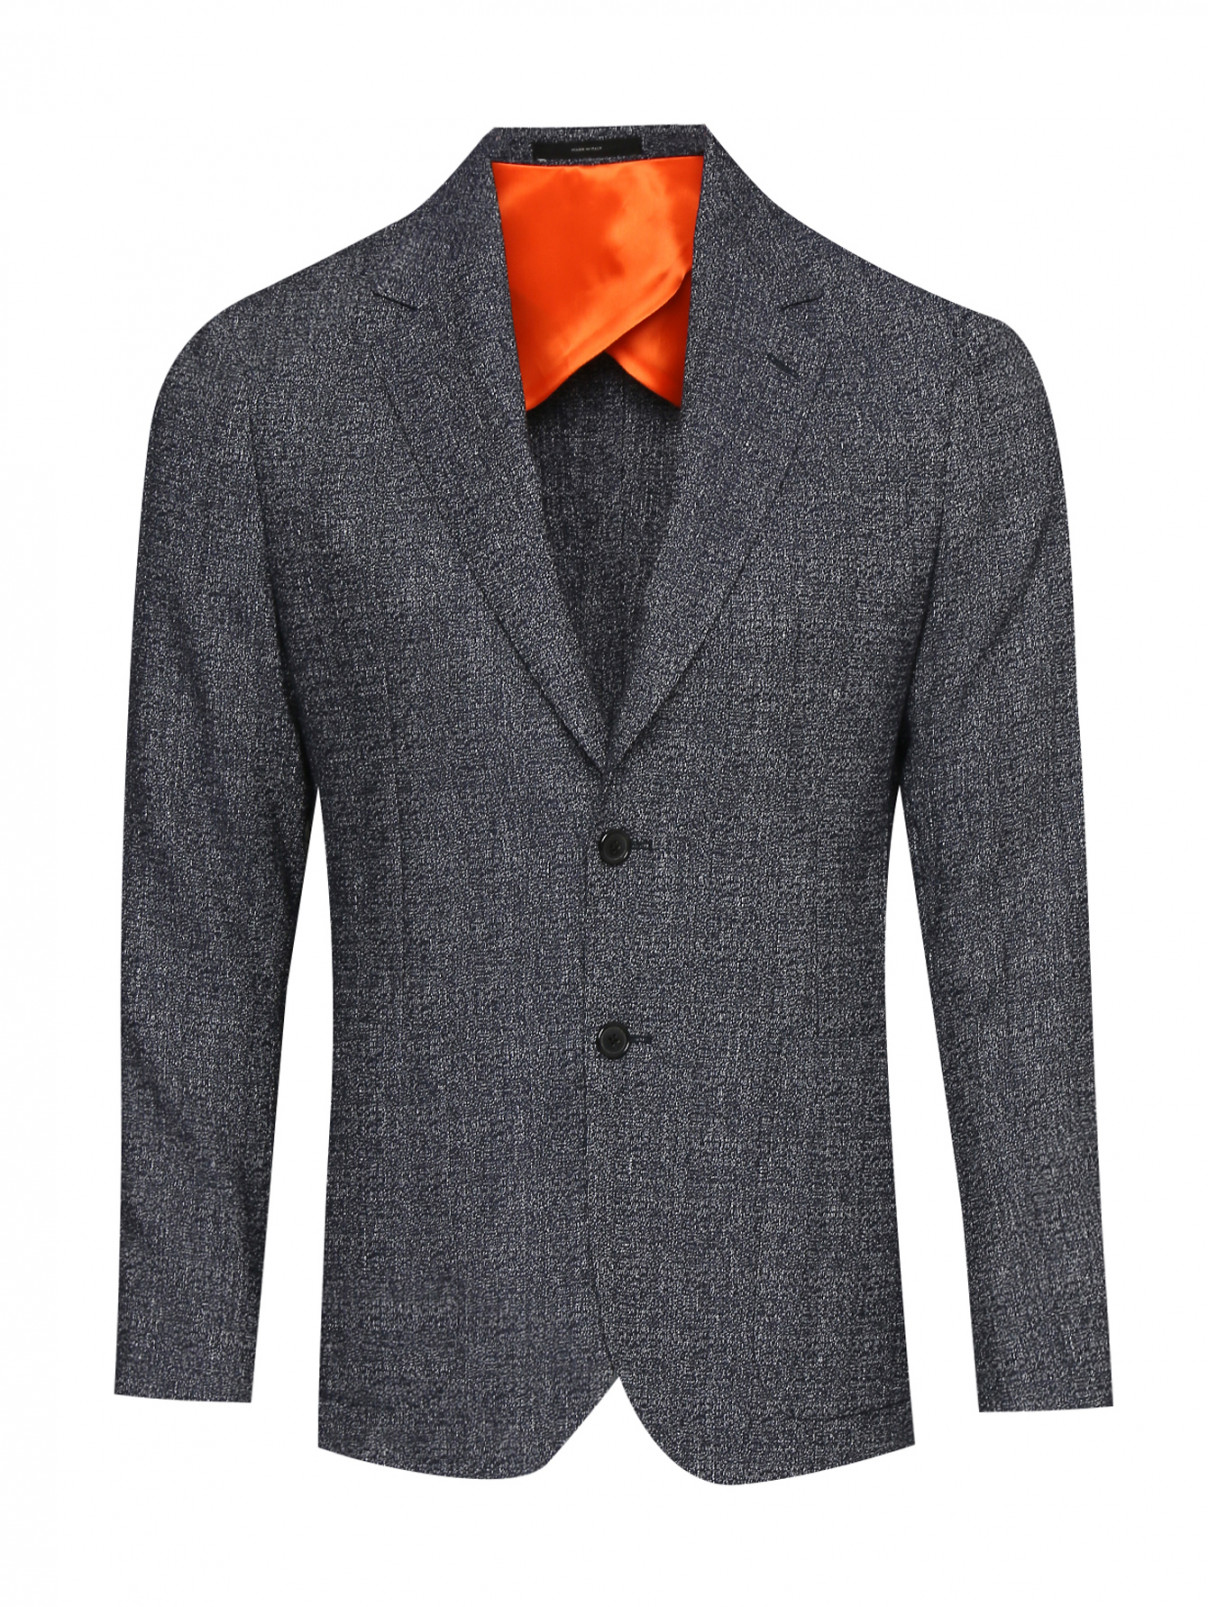 Пиджак из шерсти и льна с узором Paul Smith  –  Общий вид  – Цвет:  Синий